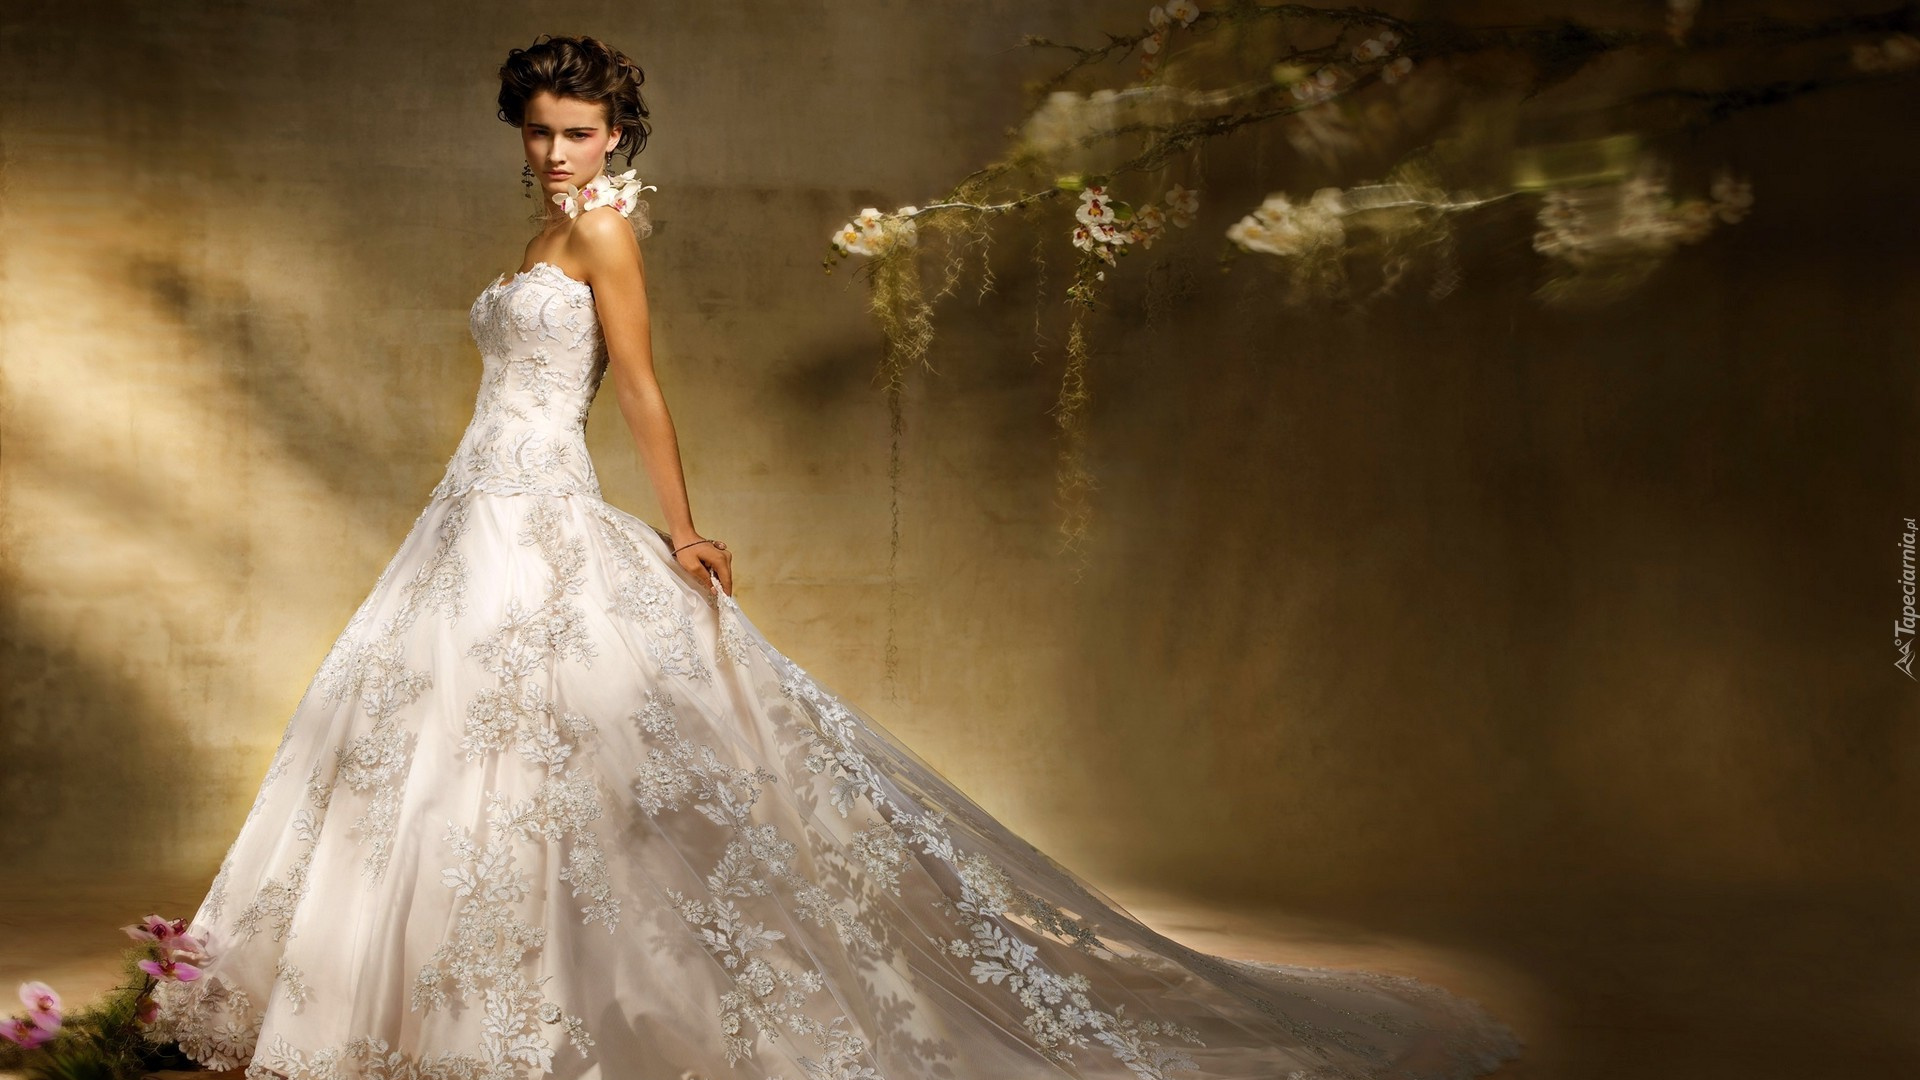 婚礼礼服, 衣服, 礼服, 时装模特, 新娘的服装 壁纸 1920x1080 允许